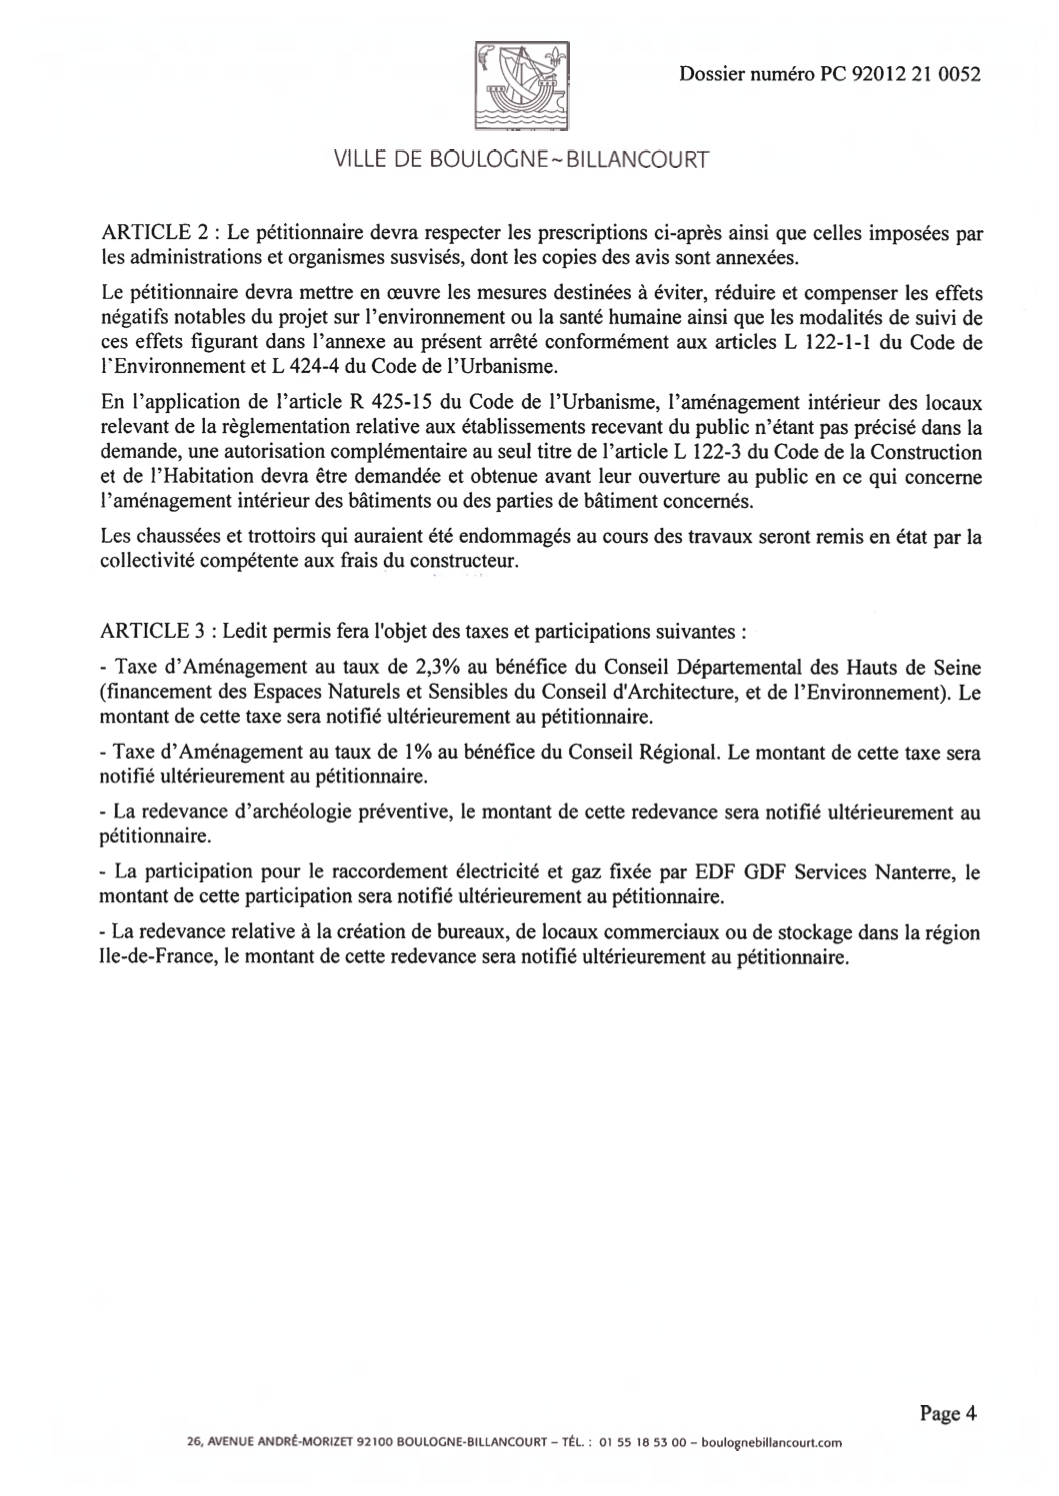 Arrêté du Permis construire Bouygues-Vivaldi N°92012 21 0052 Article 2 et 3 page 4